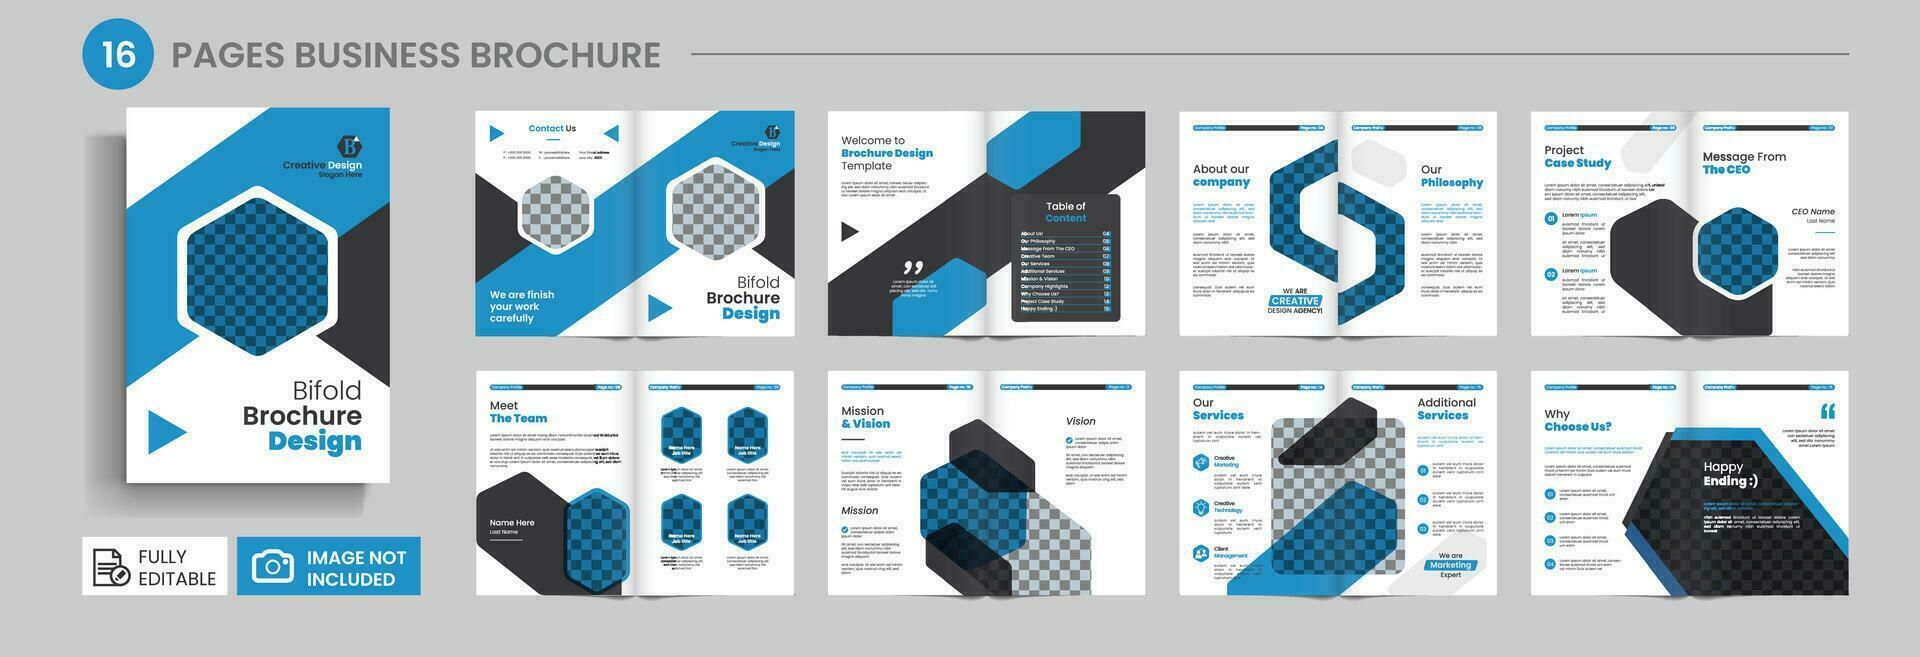 mehrere Seite Geschäft Broschüre Design oder Unternehmen Profil, 16 Seite Broschüre vektor